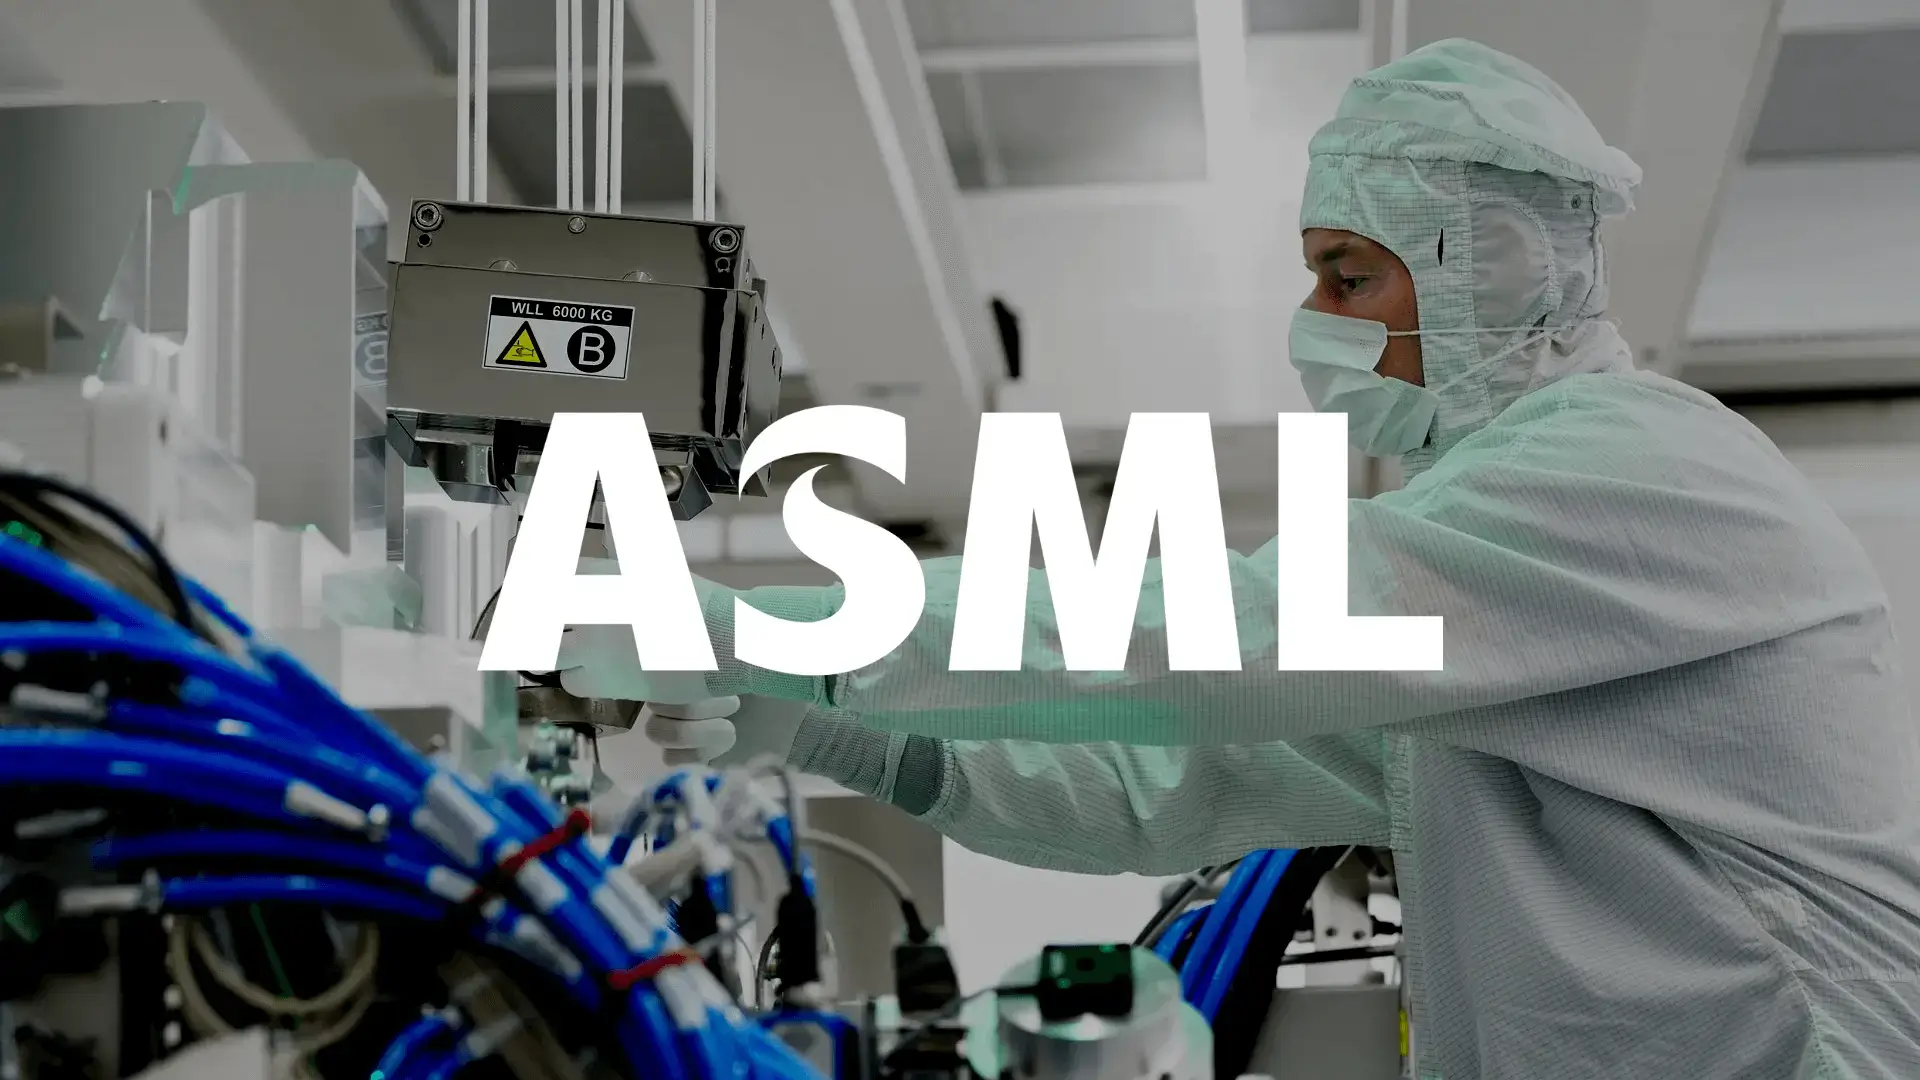 ASML Aktie Analyse – Unendliches Wachstumspotential in der Chip-Branche?